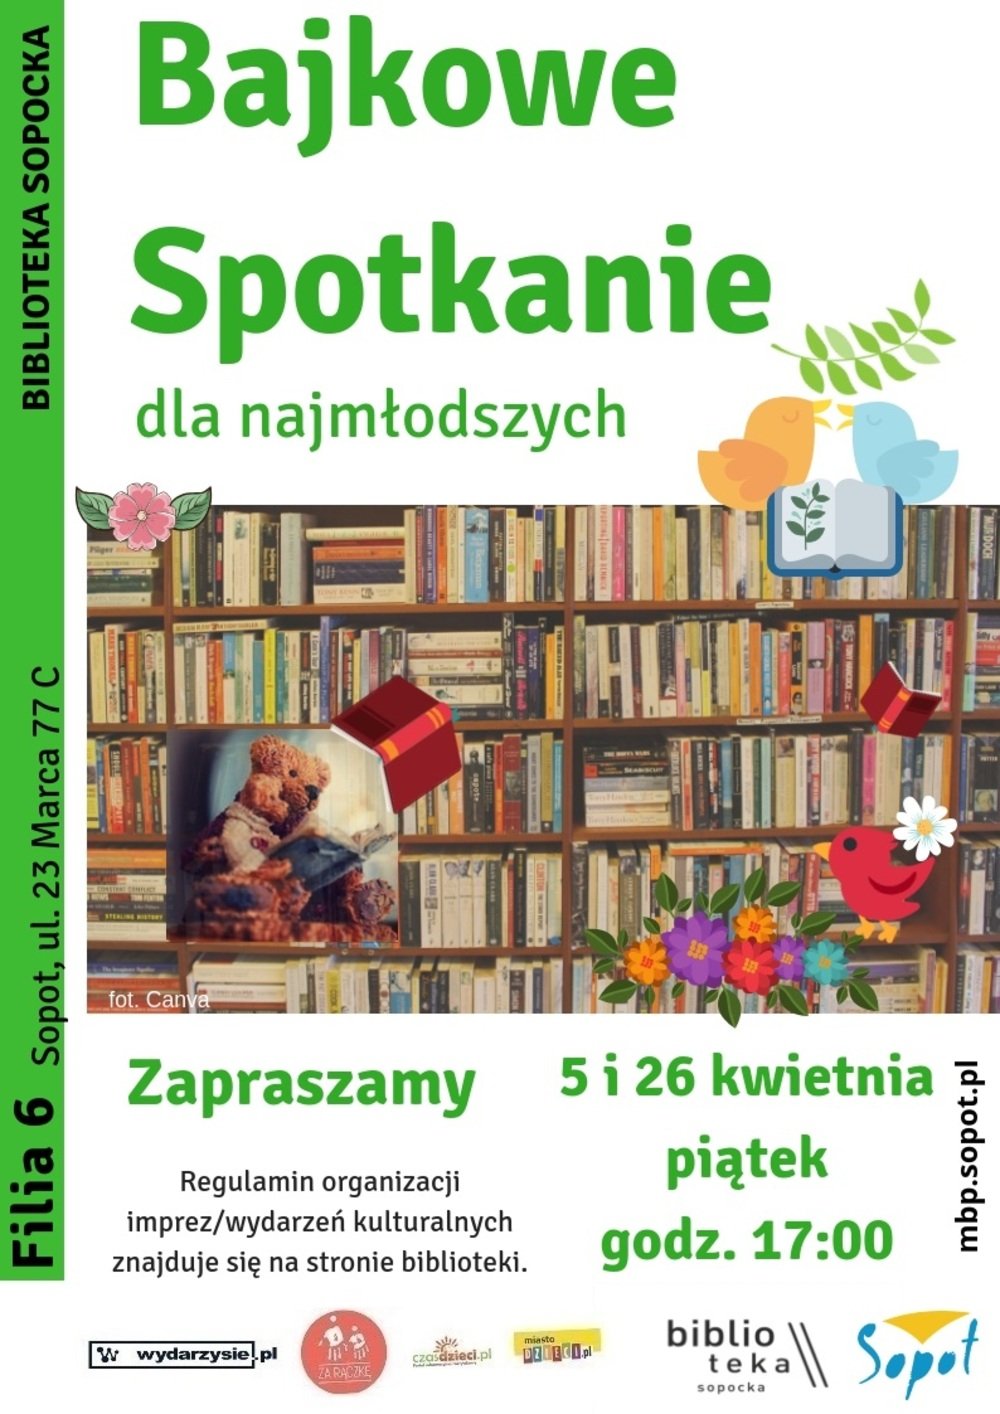 Biblioteka Sopocka: Bajkowe spotkania dla najmłodszych